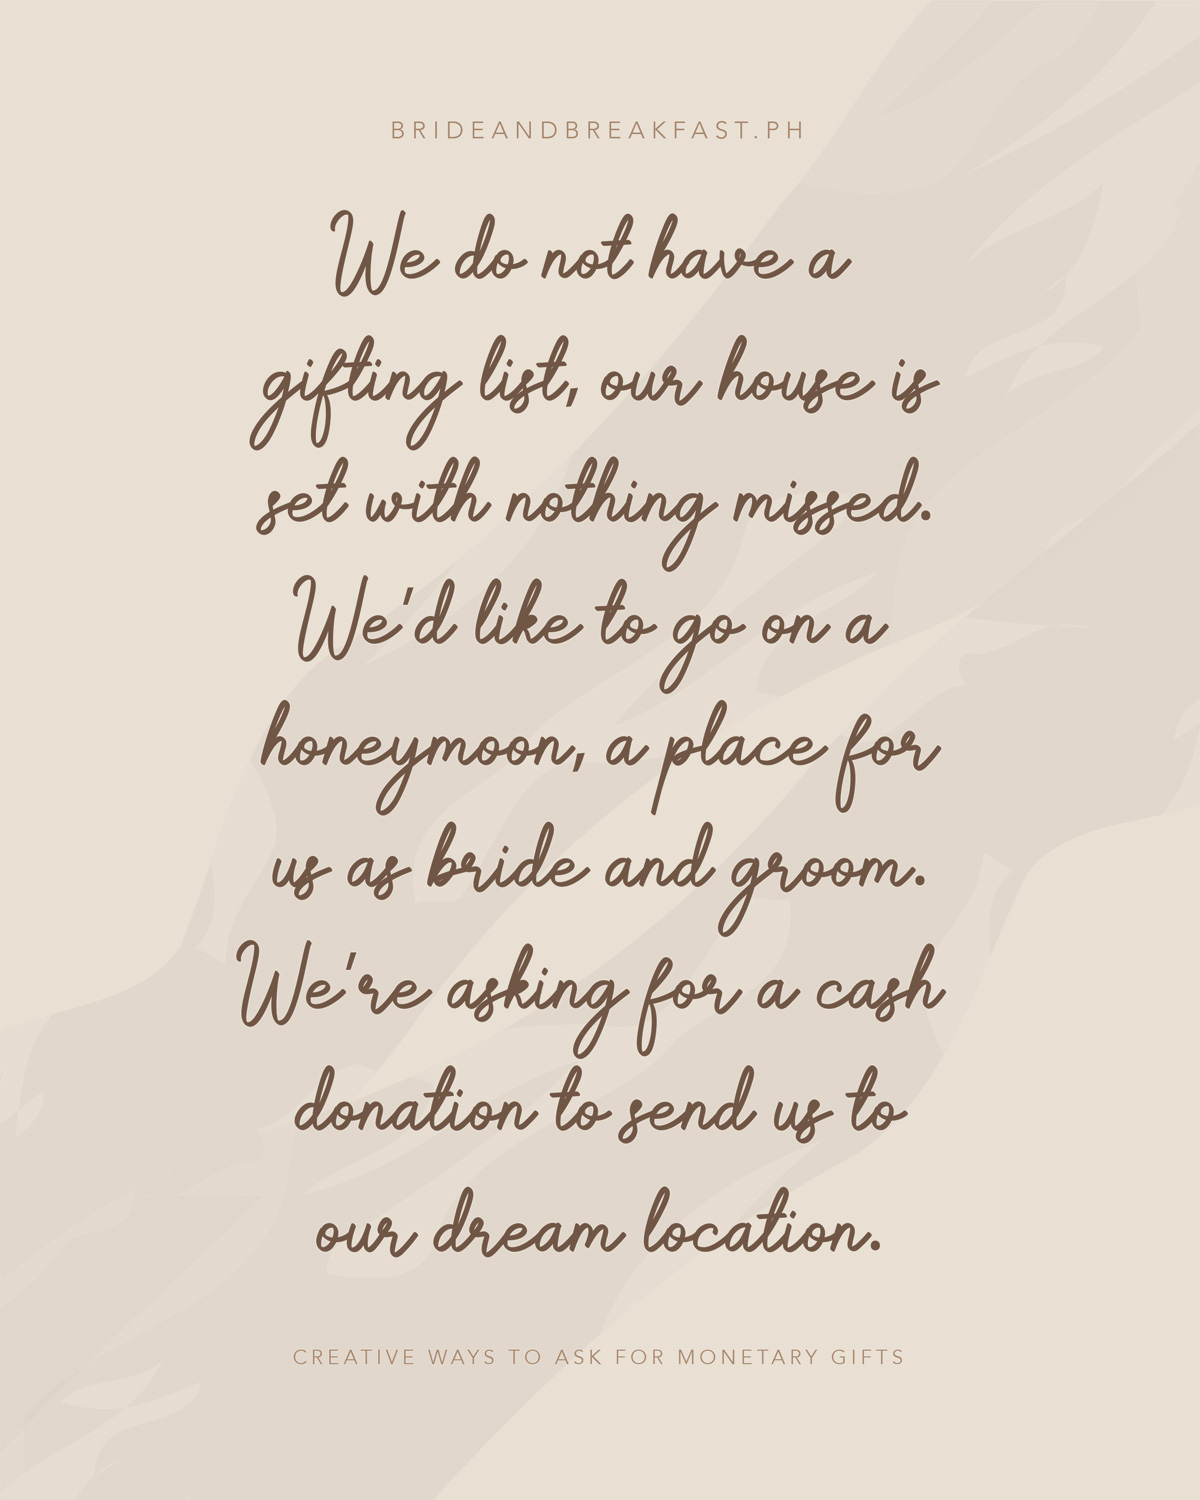 Non abbiamo una lista gifting, la nostra casa è impostato con nulla perso. Vorremmo andare in luna di miele un posto per noi come sposi. Stiamo chiedendo una donazione in denaro per inviarci nella nostra posizione da sogno.